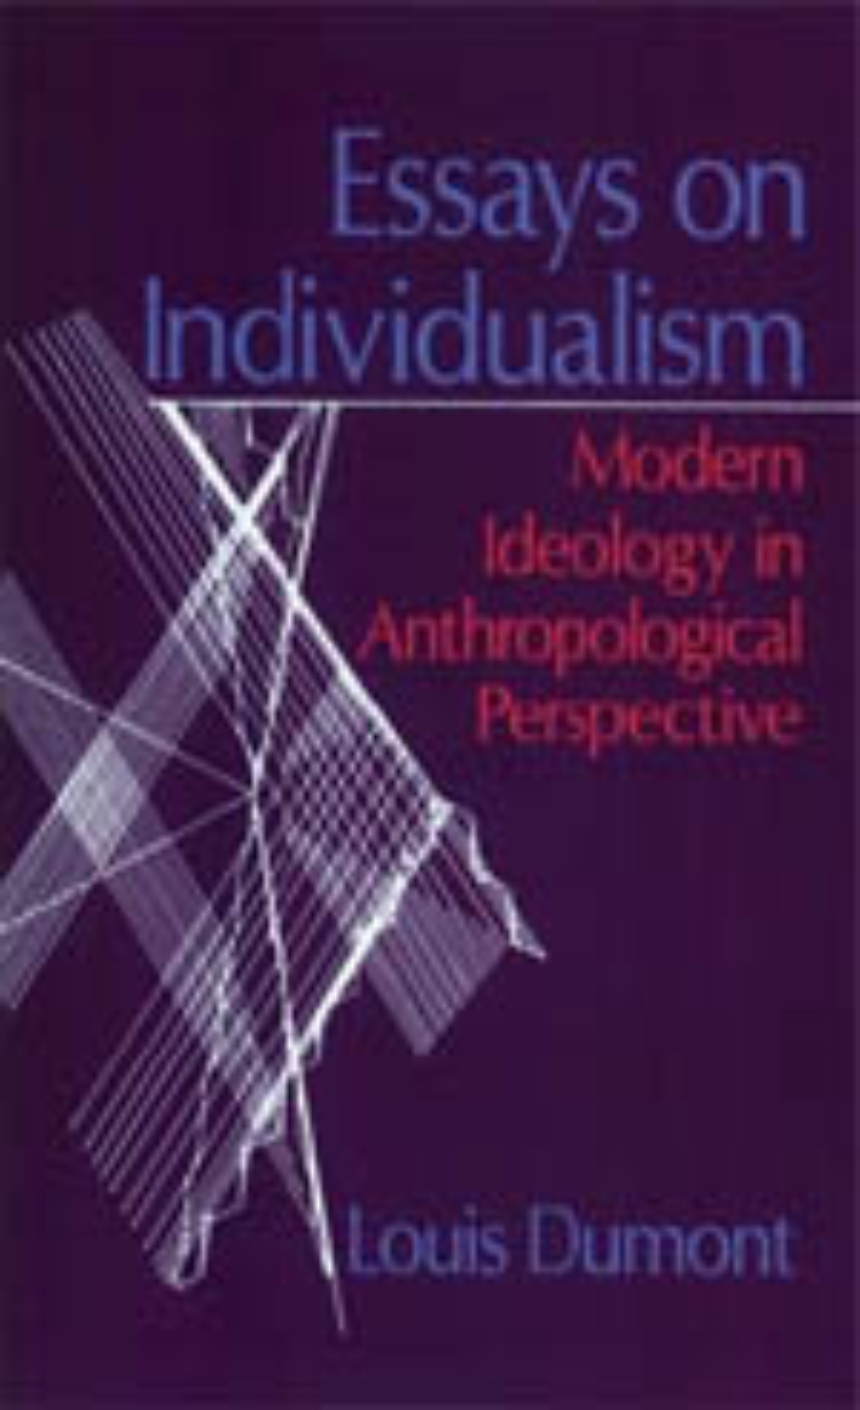 Essays on Individualism